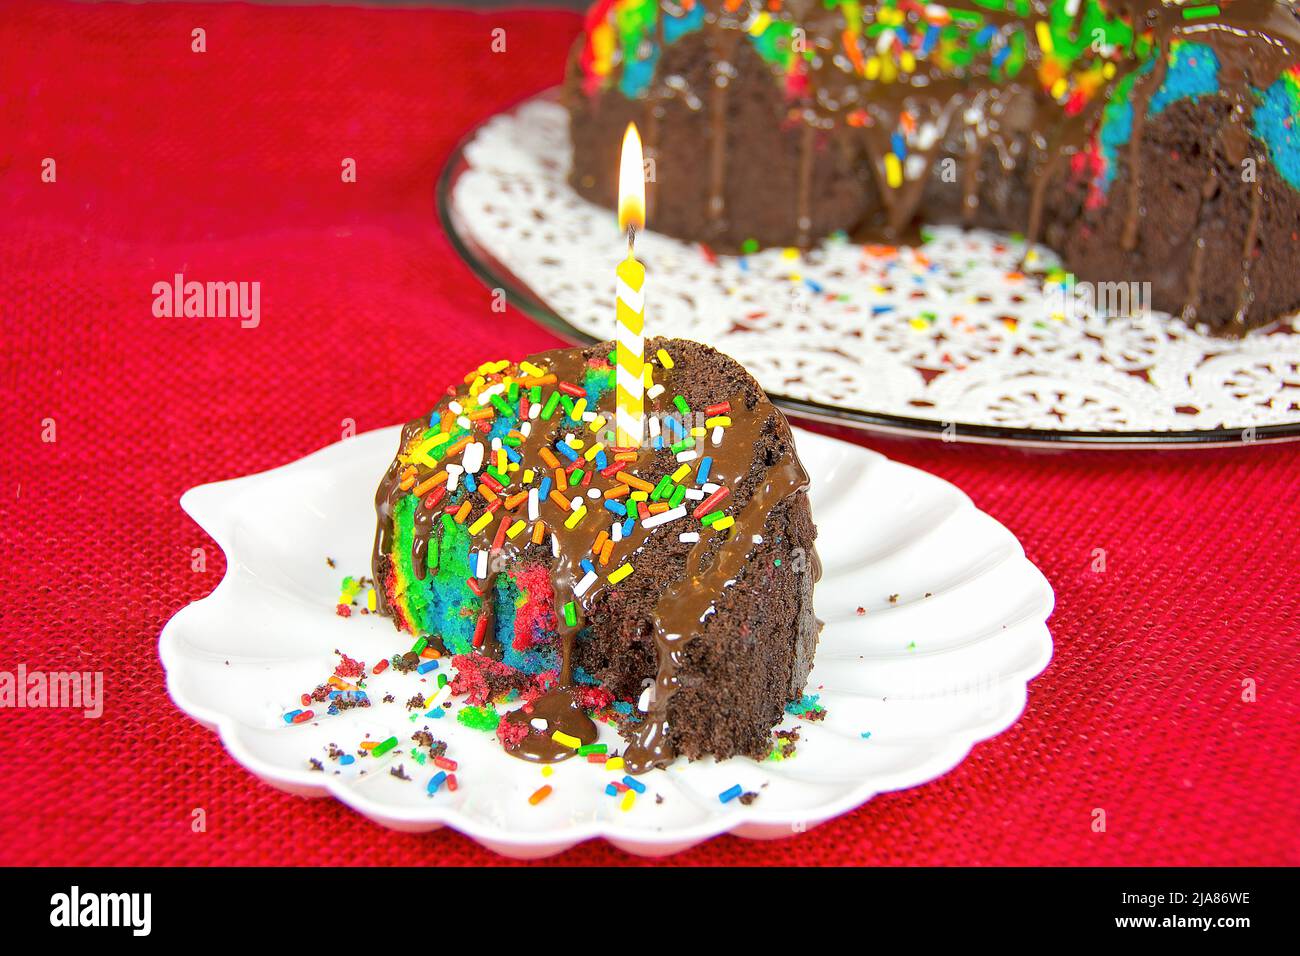 Vela de cumpleaños en una rebanada de pastel de chocolate arco iris Foto de stock